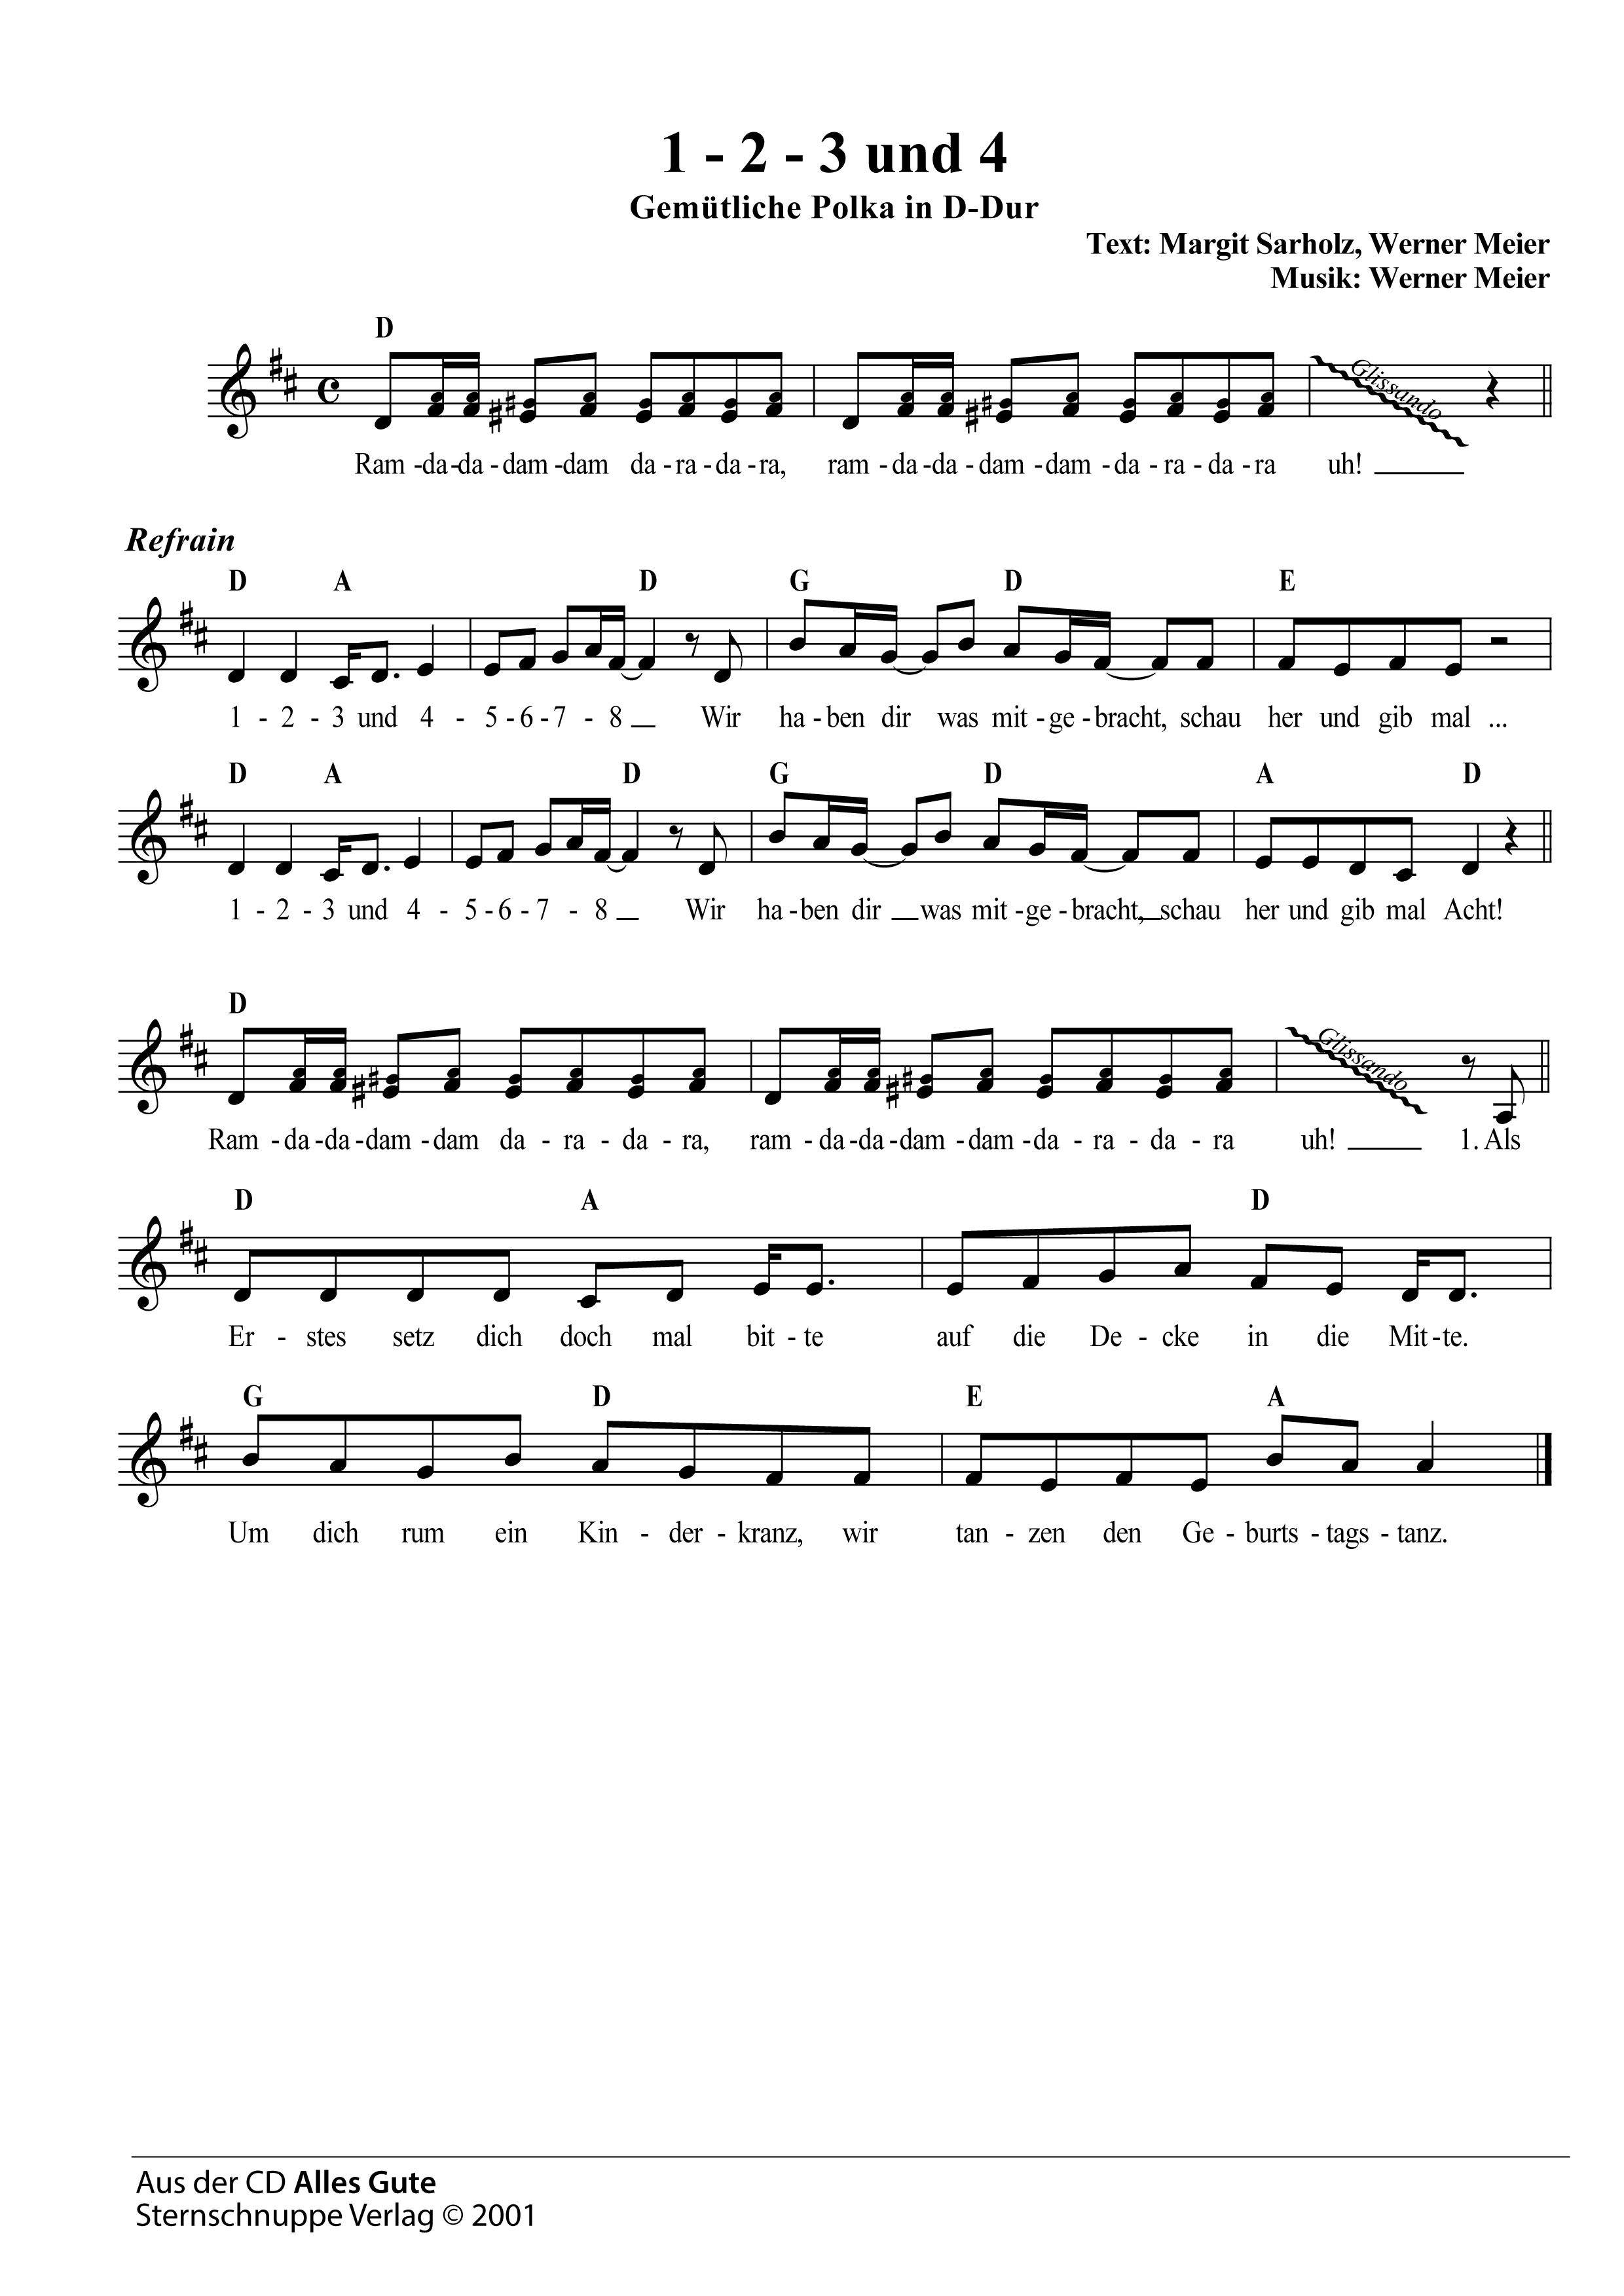 Liedtext, Akkorde und Noten vom Kinderlied 1-2-3 und 4 (Spiel-Lied)